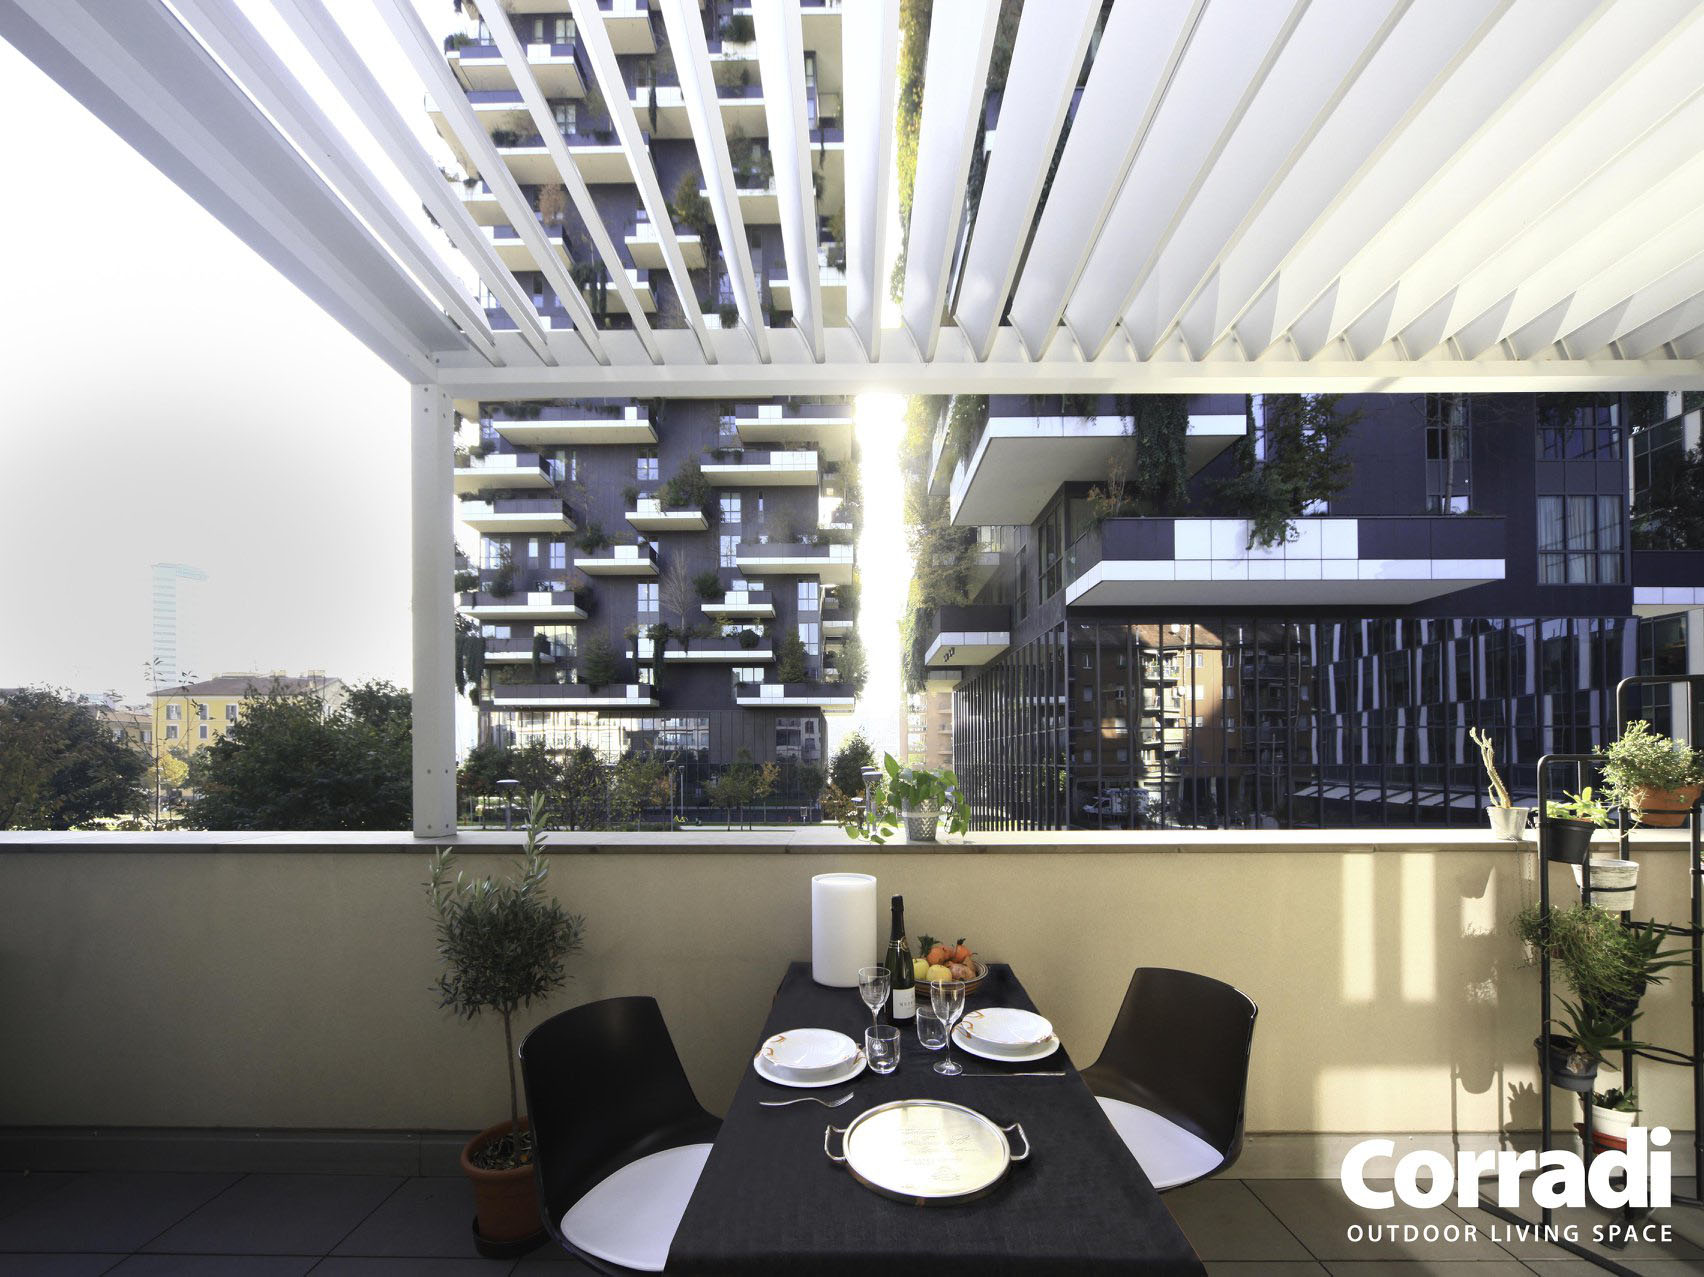 Pergola bioclimatique blanche couvre la terrasse extérieure d'un balcon moderne